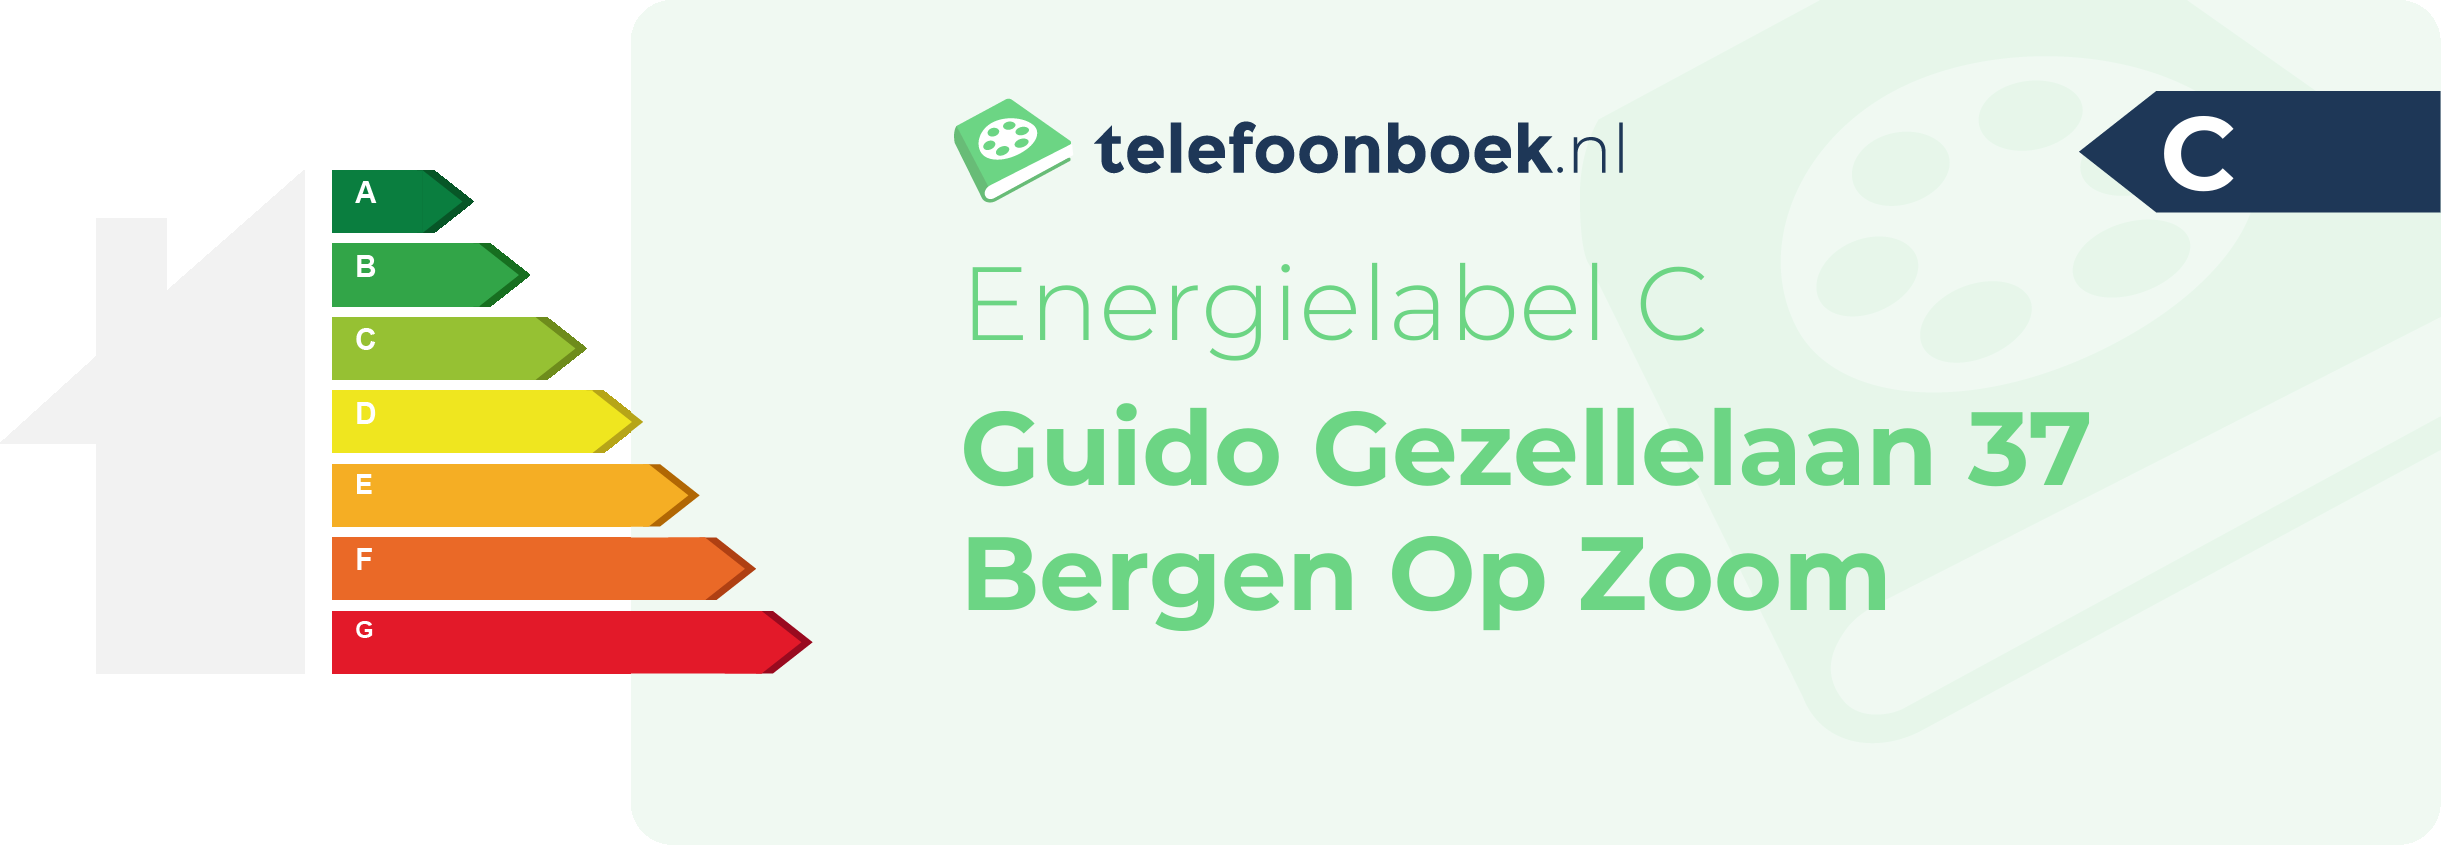 Energielabel Guido Gezellelaan 37 Bergen Op Zoom